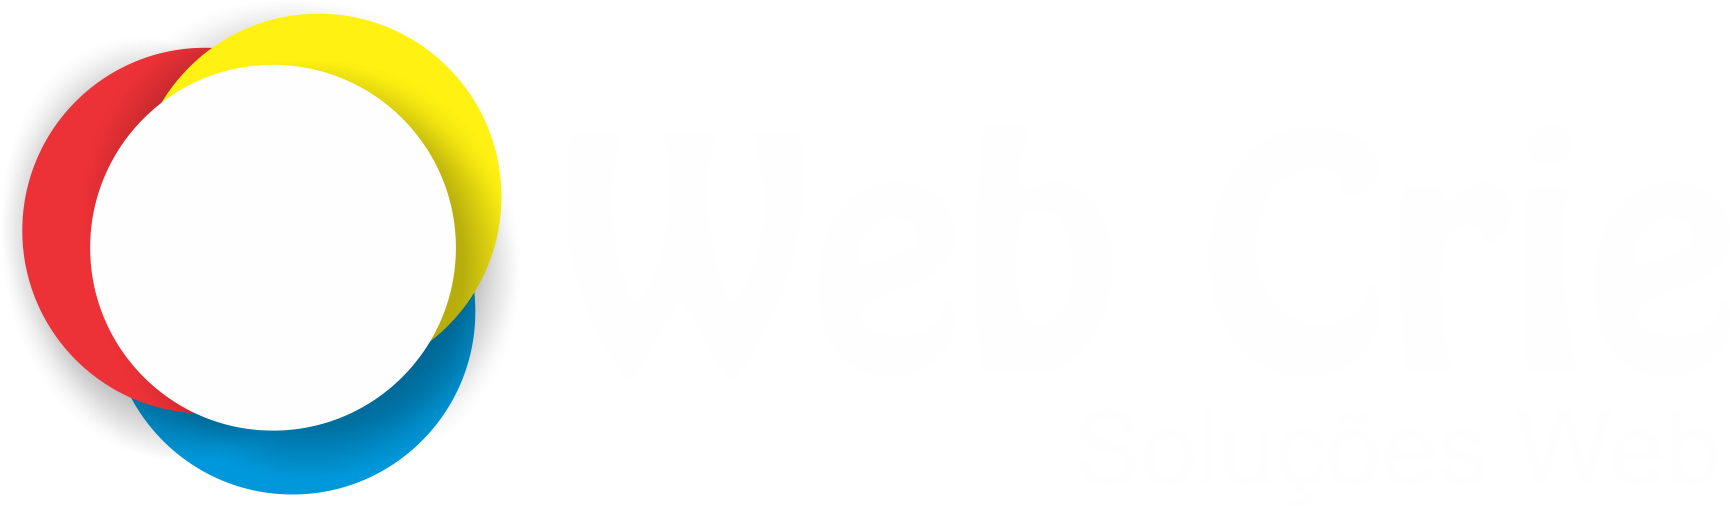 Web Crie - Soluções em Webdesign